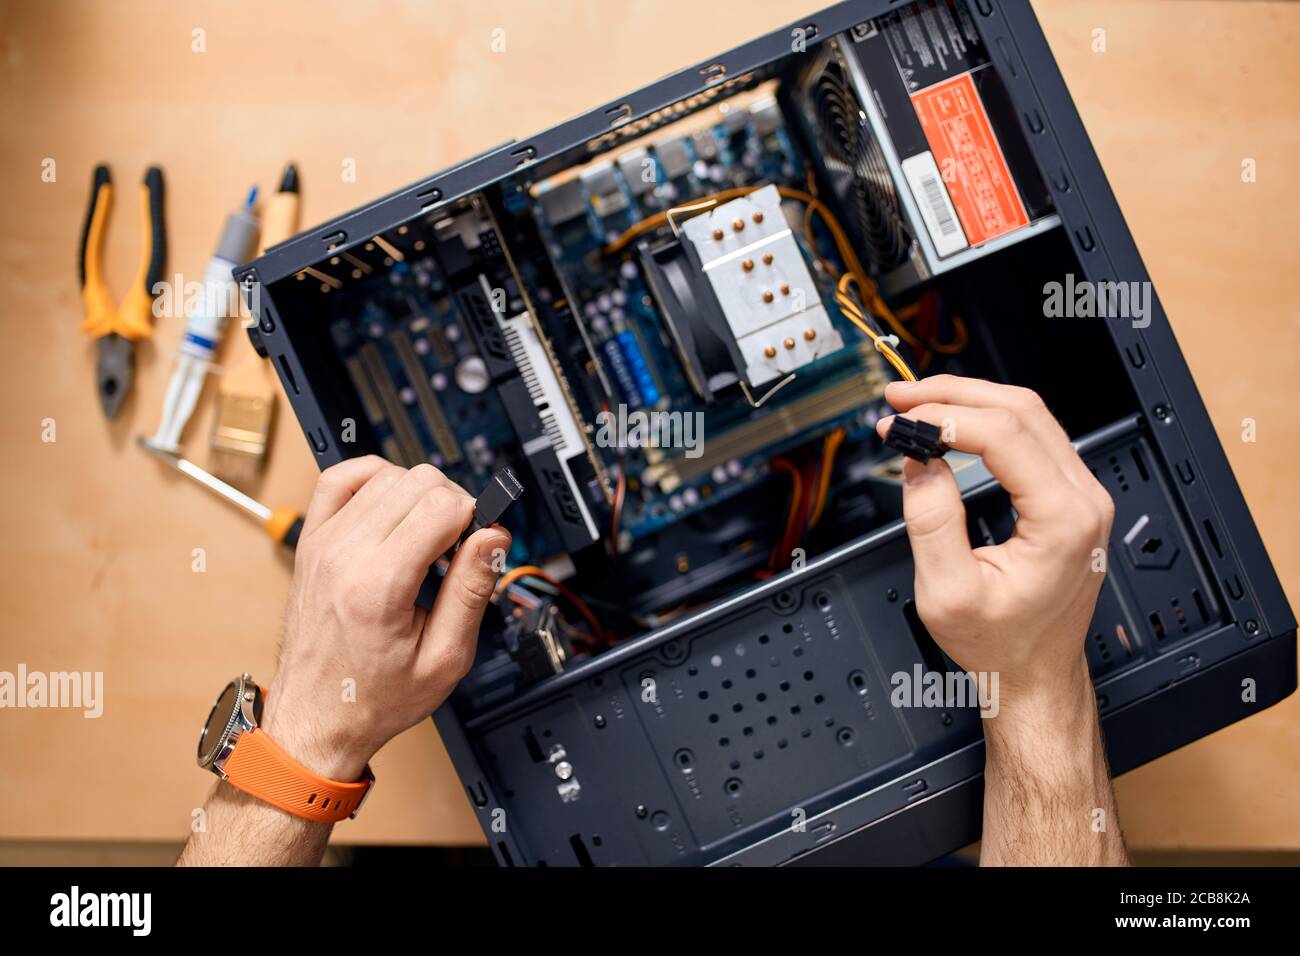 Reparaturman zerlegt einen Computer, Draufsicht Foto Stockfoto